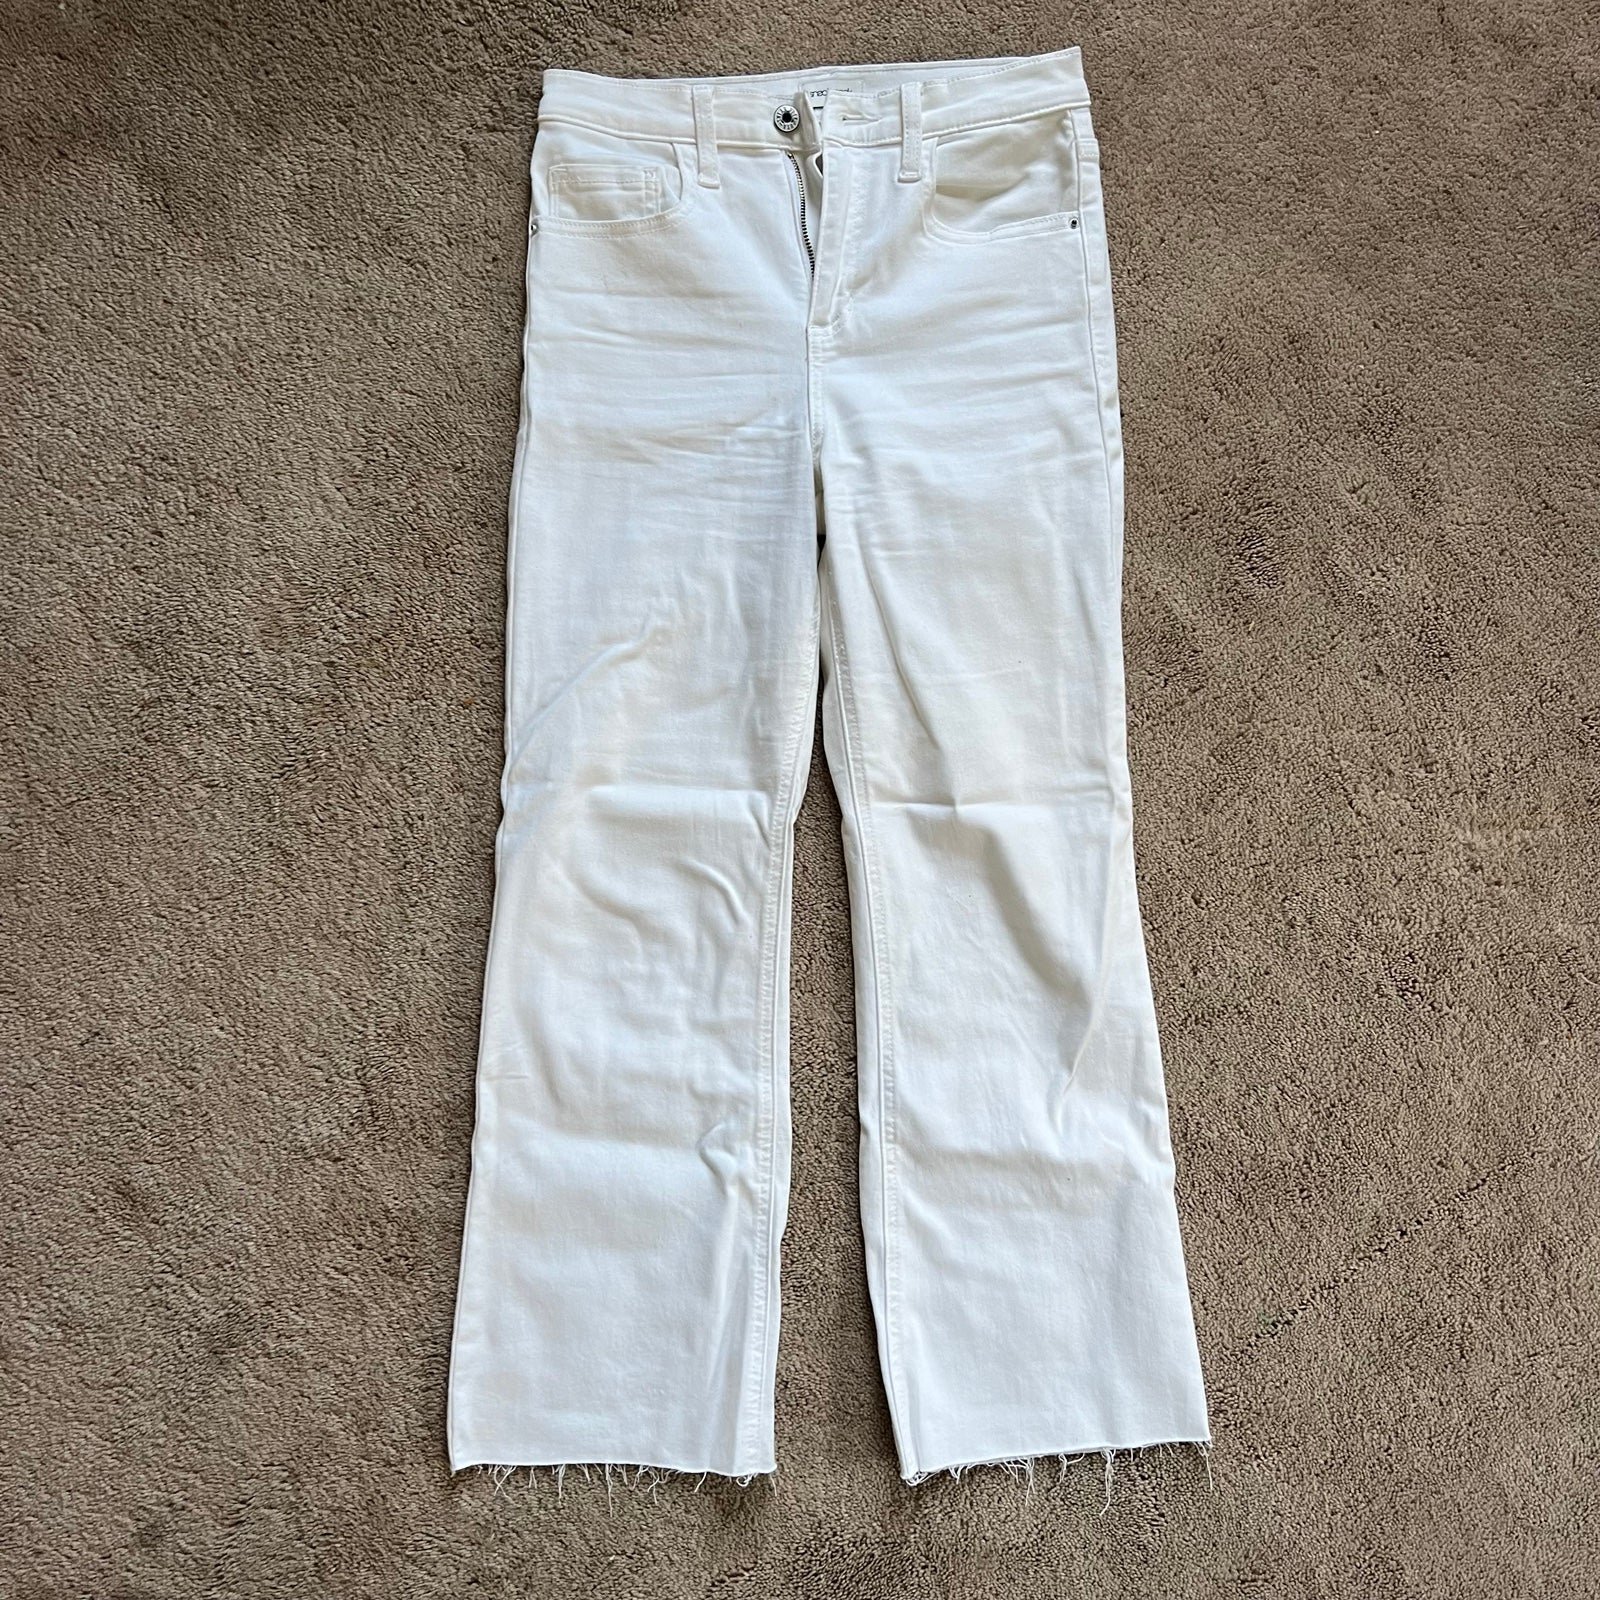 Discounted White Mid Rise Flare Jeans IukpVFQcu High Qu